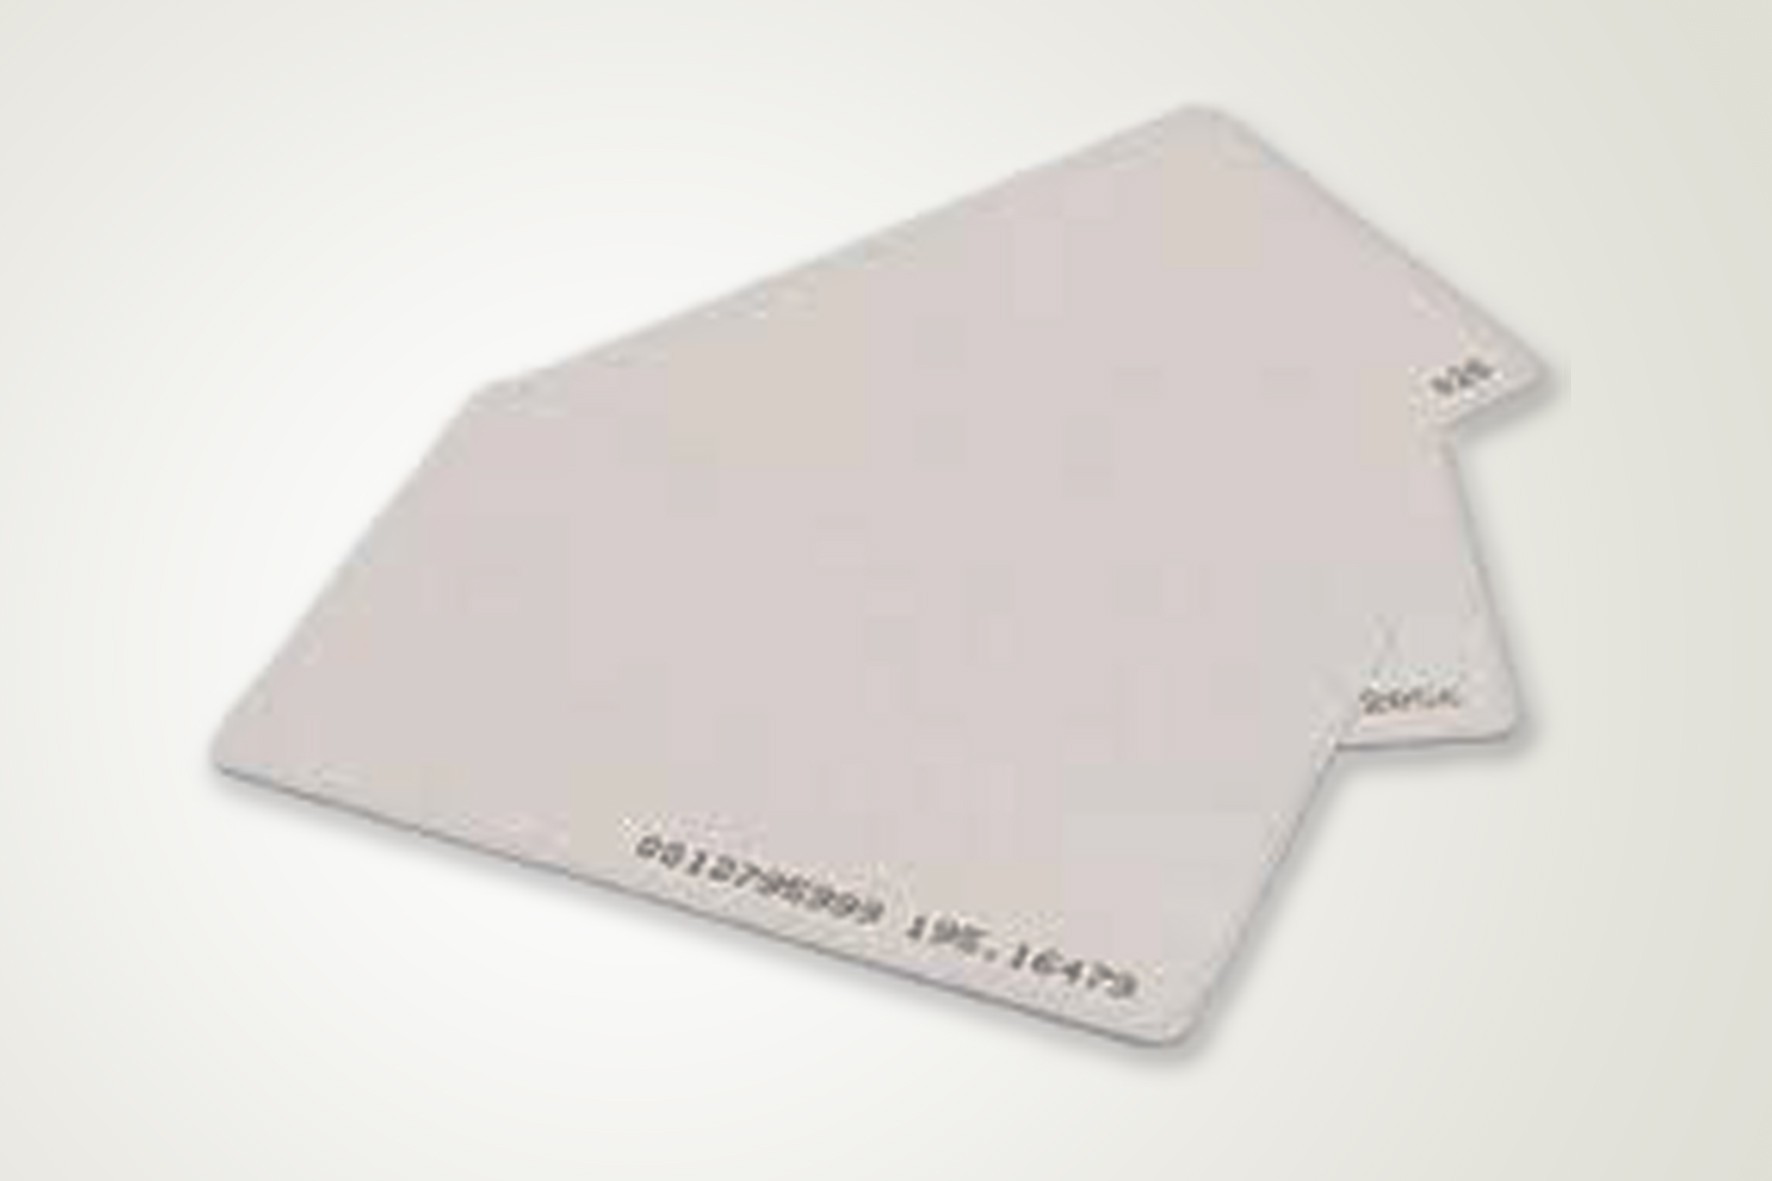 Cartão com Chip de Aproximidade na Mooca - Materiais em Pvc para Hotel